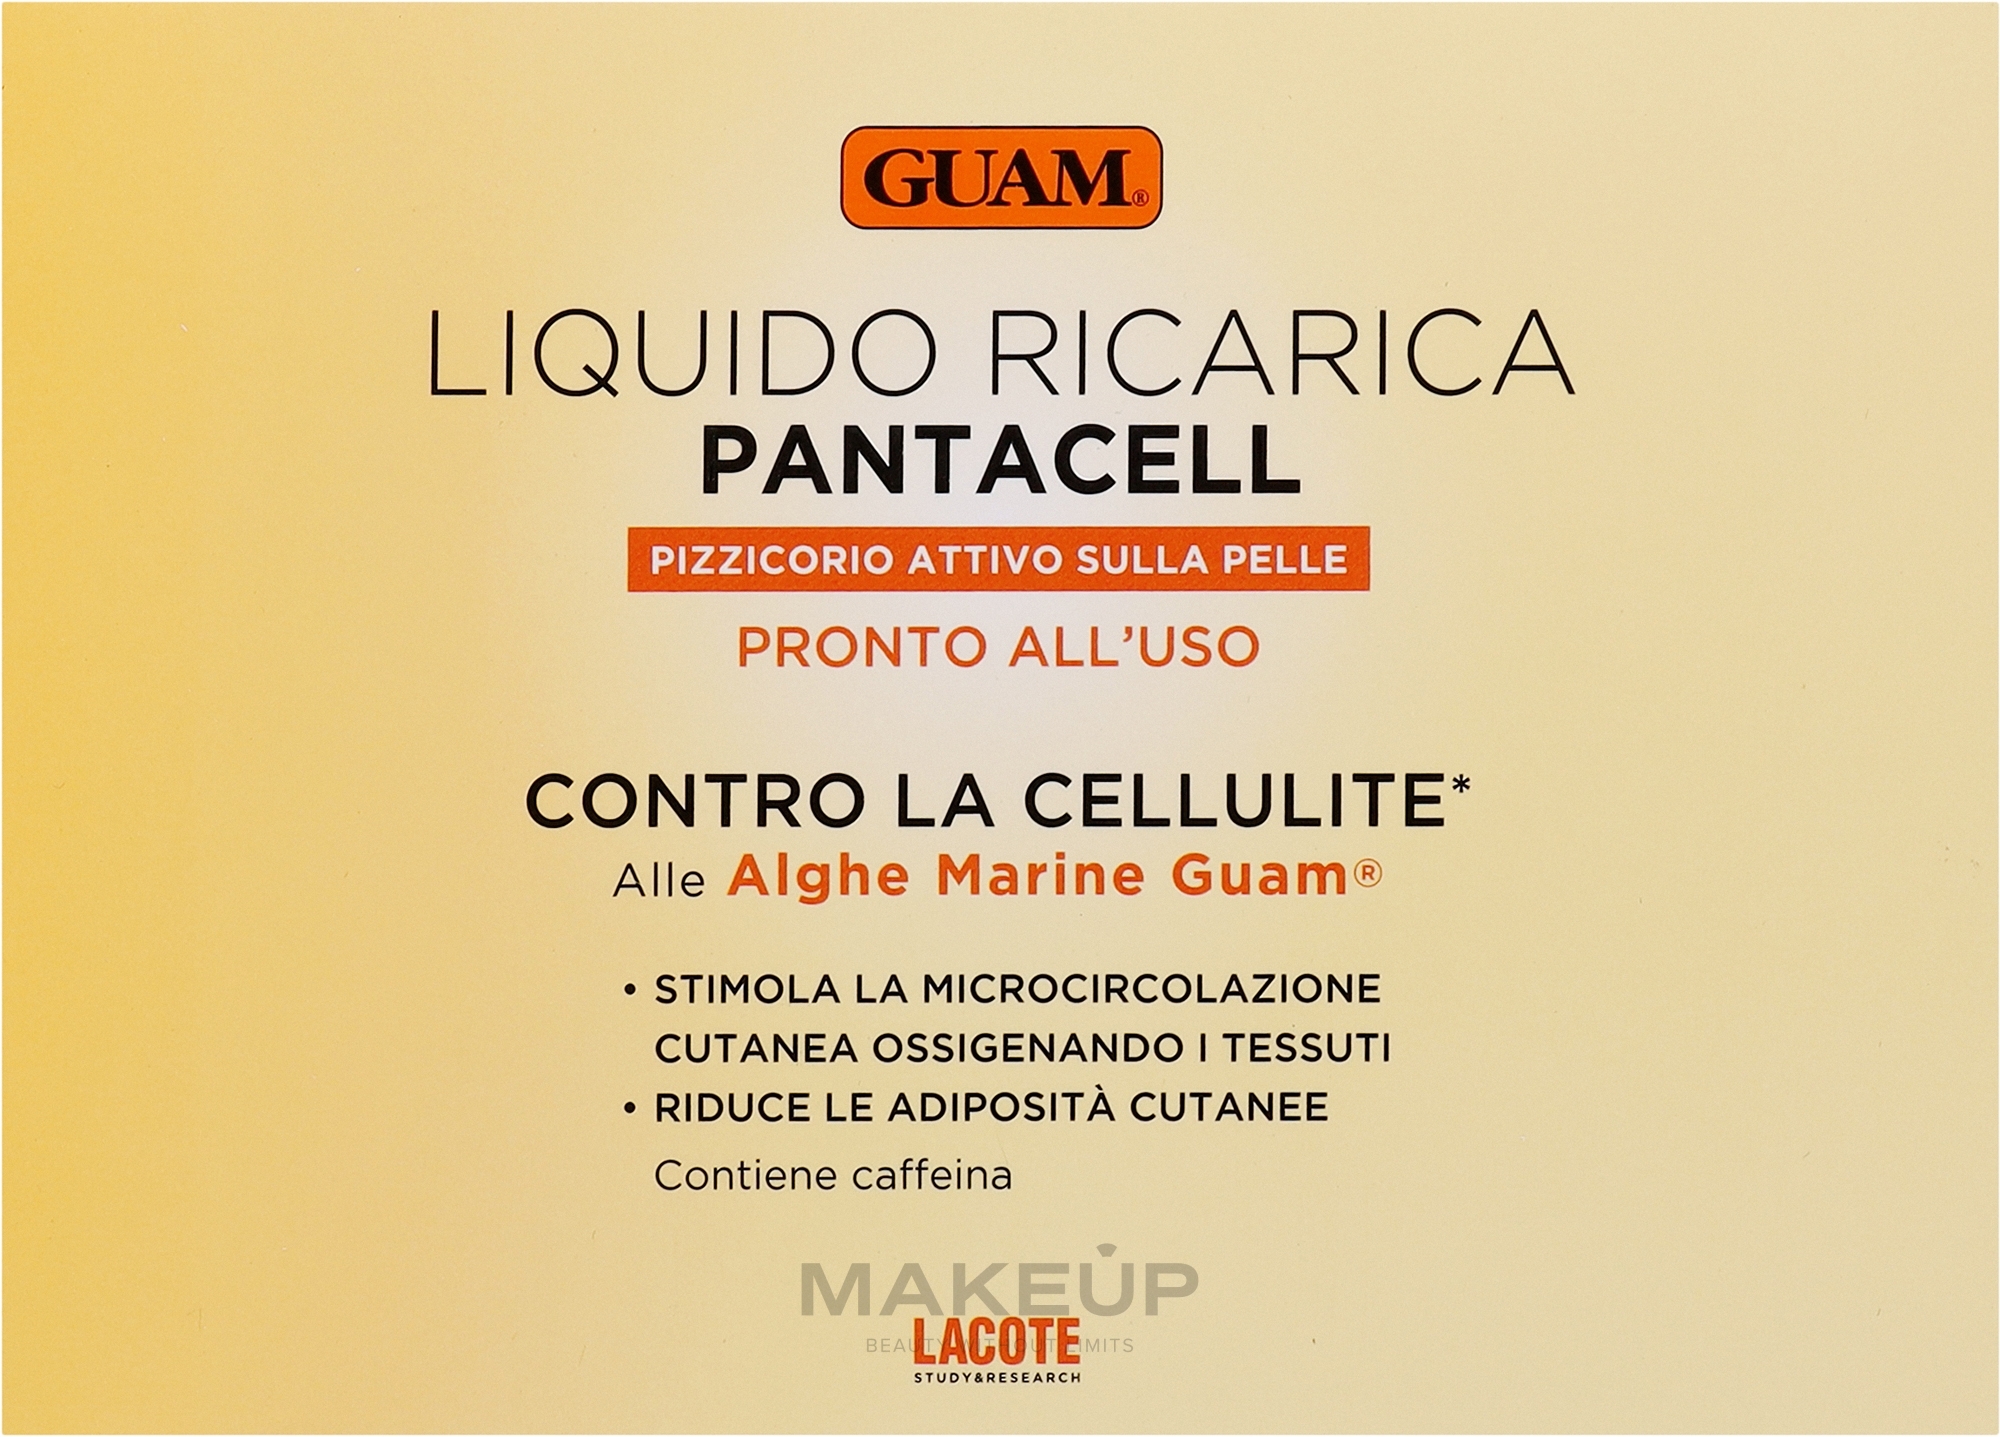 Рідина для штанів інтенсивної антицелюлітної дії з розігрівальним ефектом - Guam Pantacell — фото 3x100ml